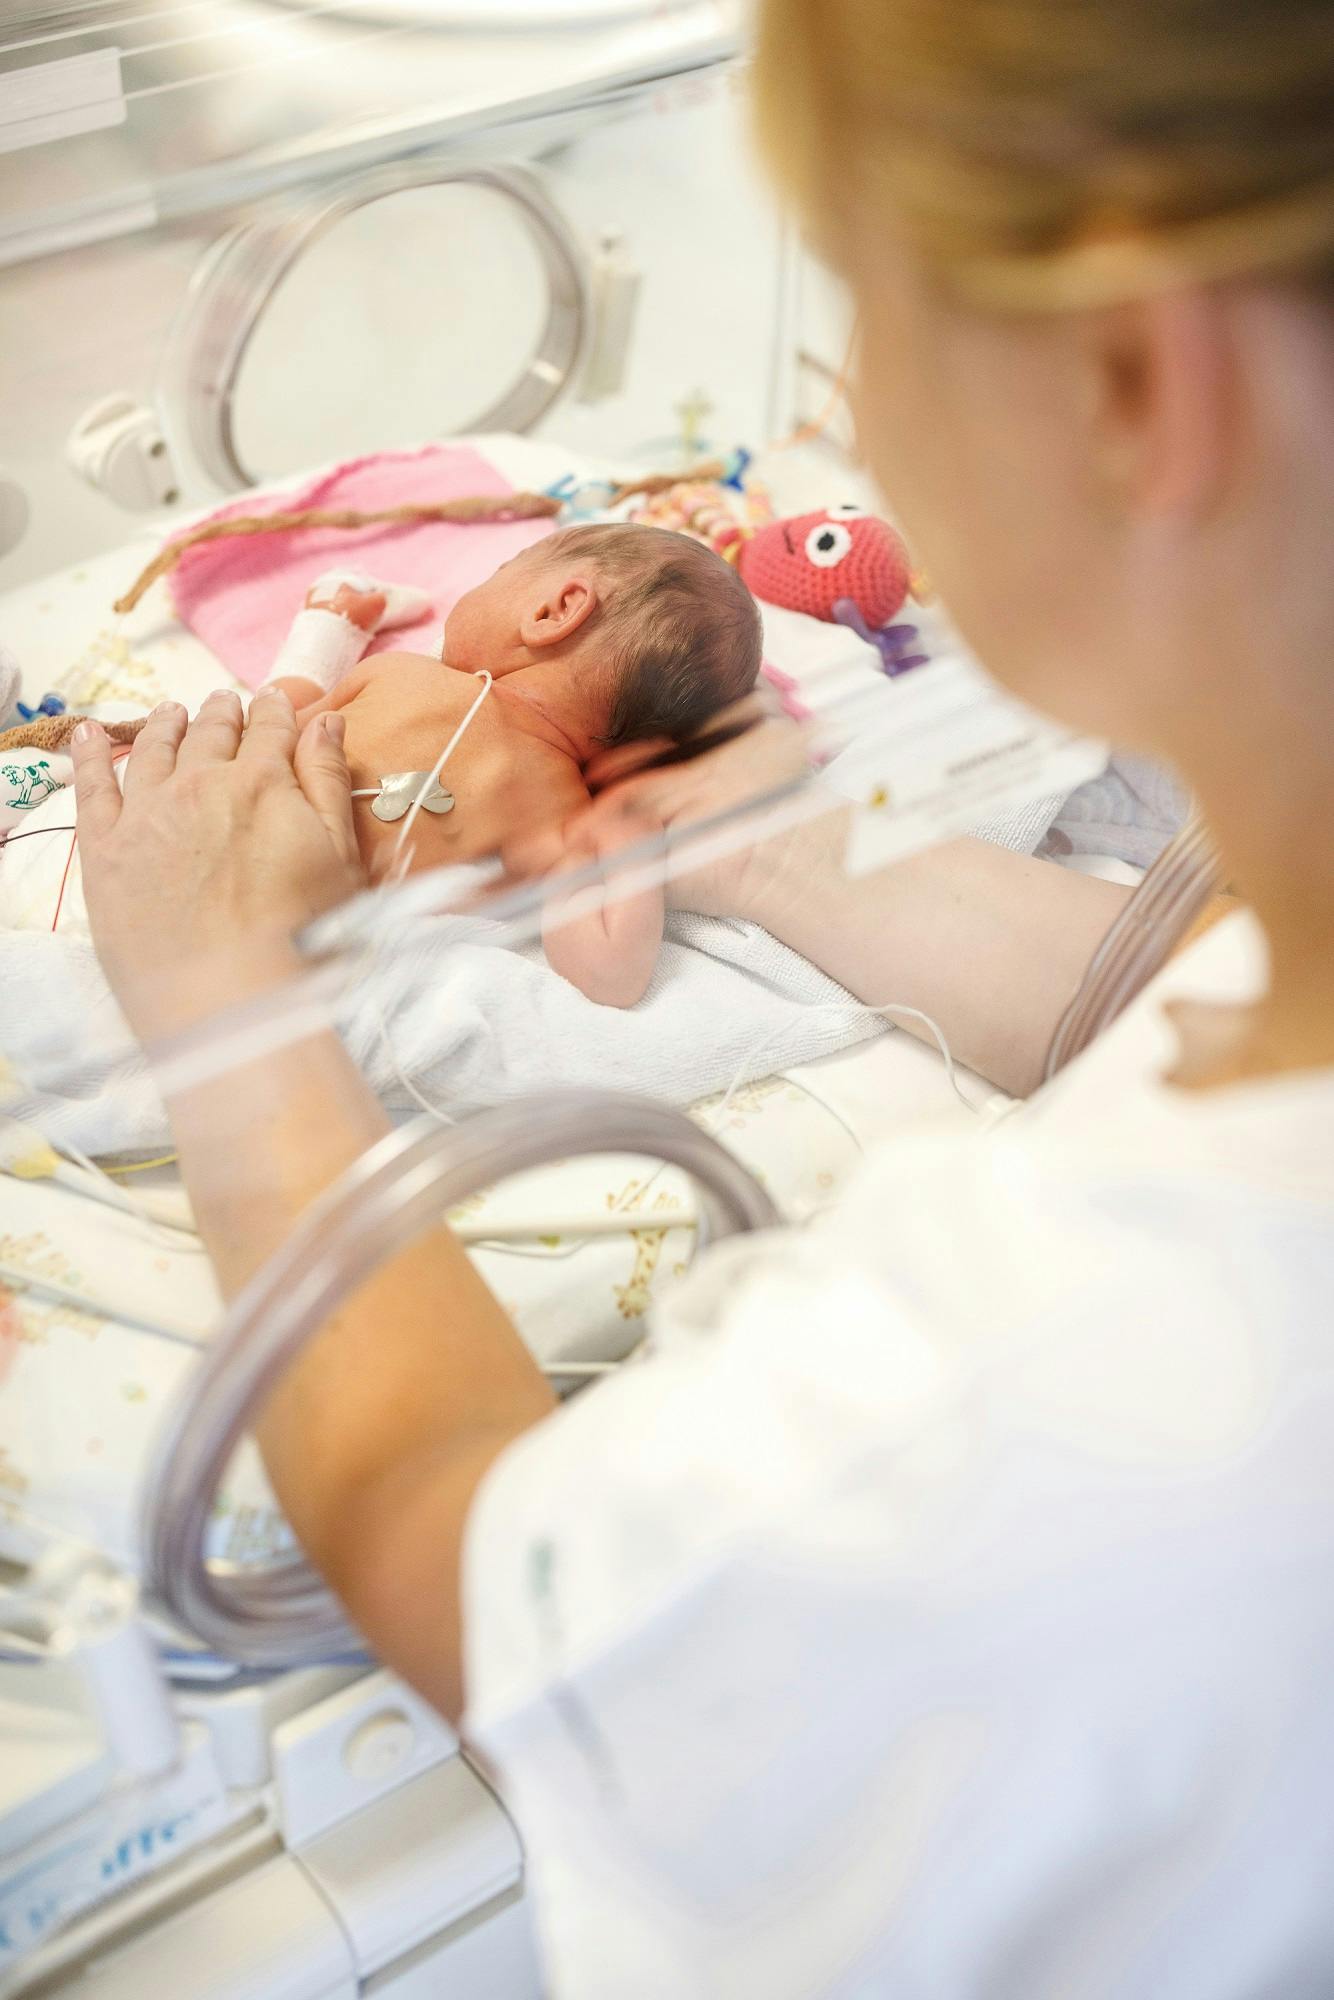 Frühgeborenes Baby in einem Inkubator mit medizinischen Geräten, versorgt von einer Person in weißer Kleidung.